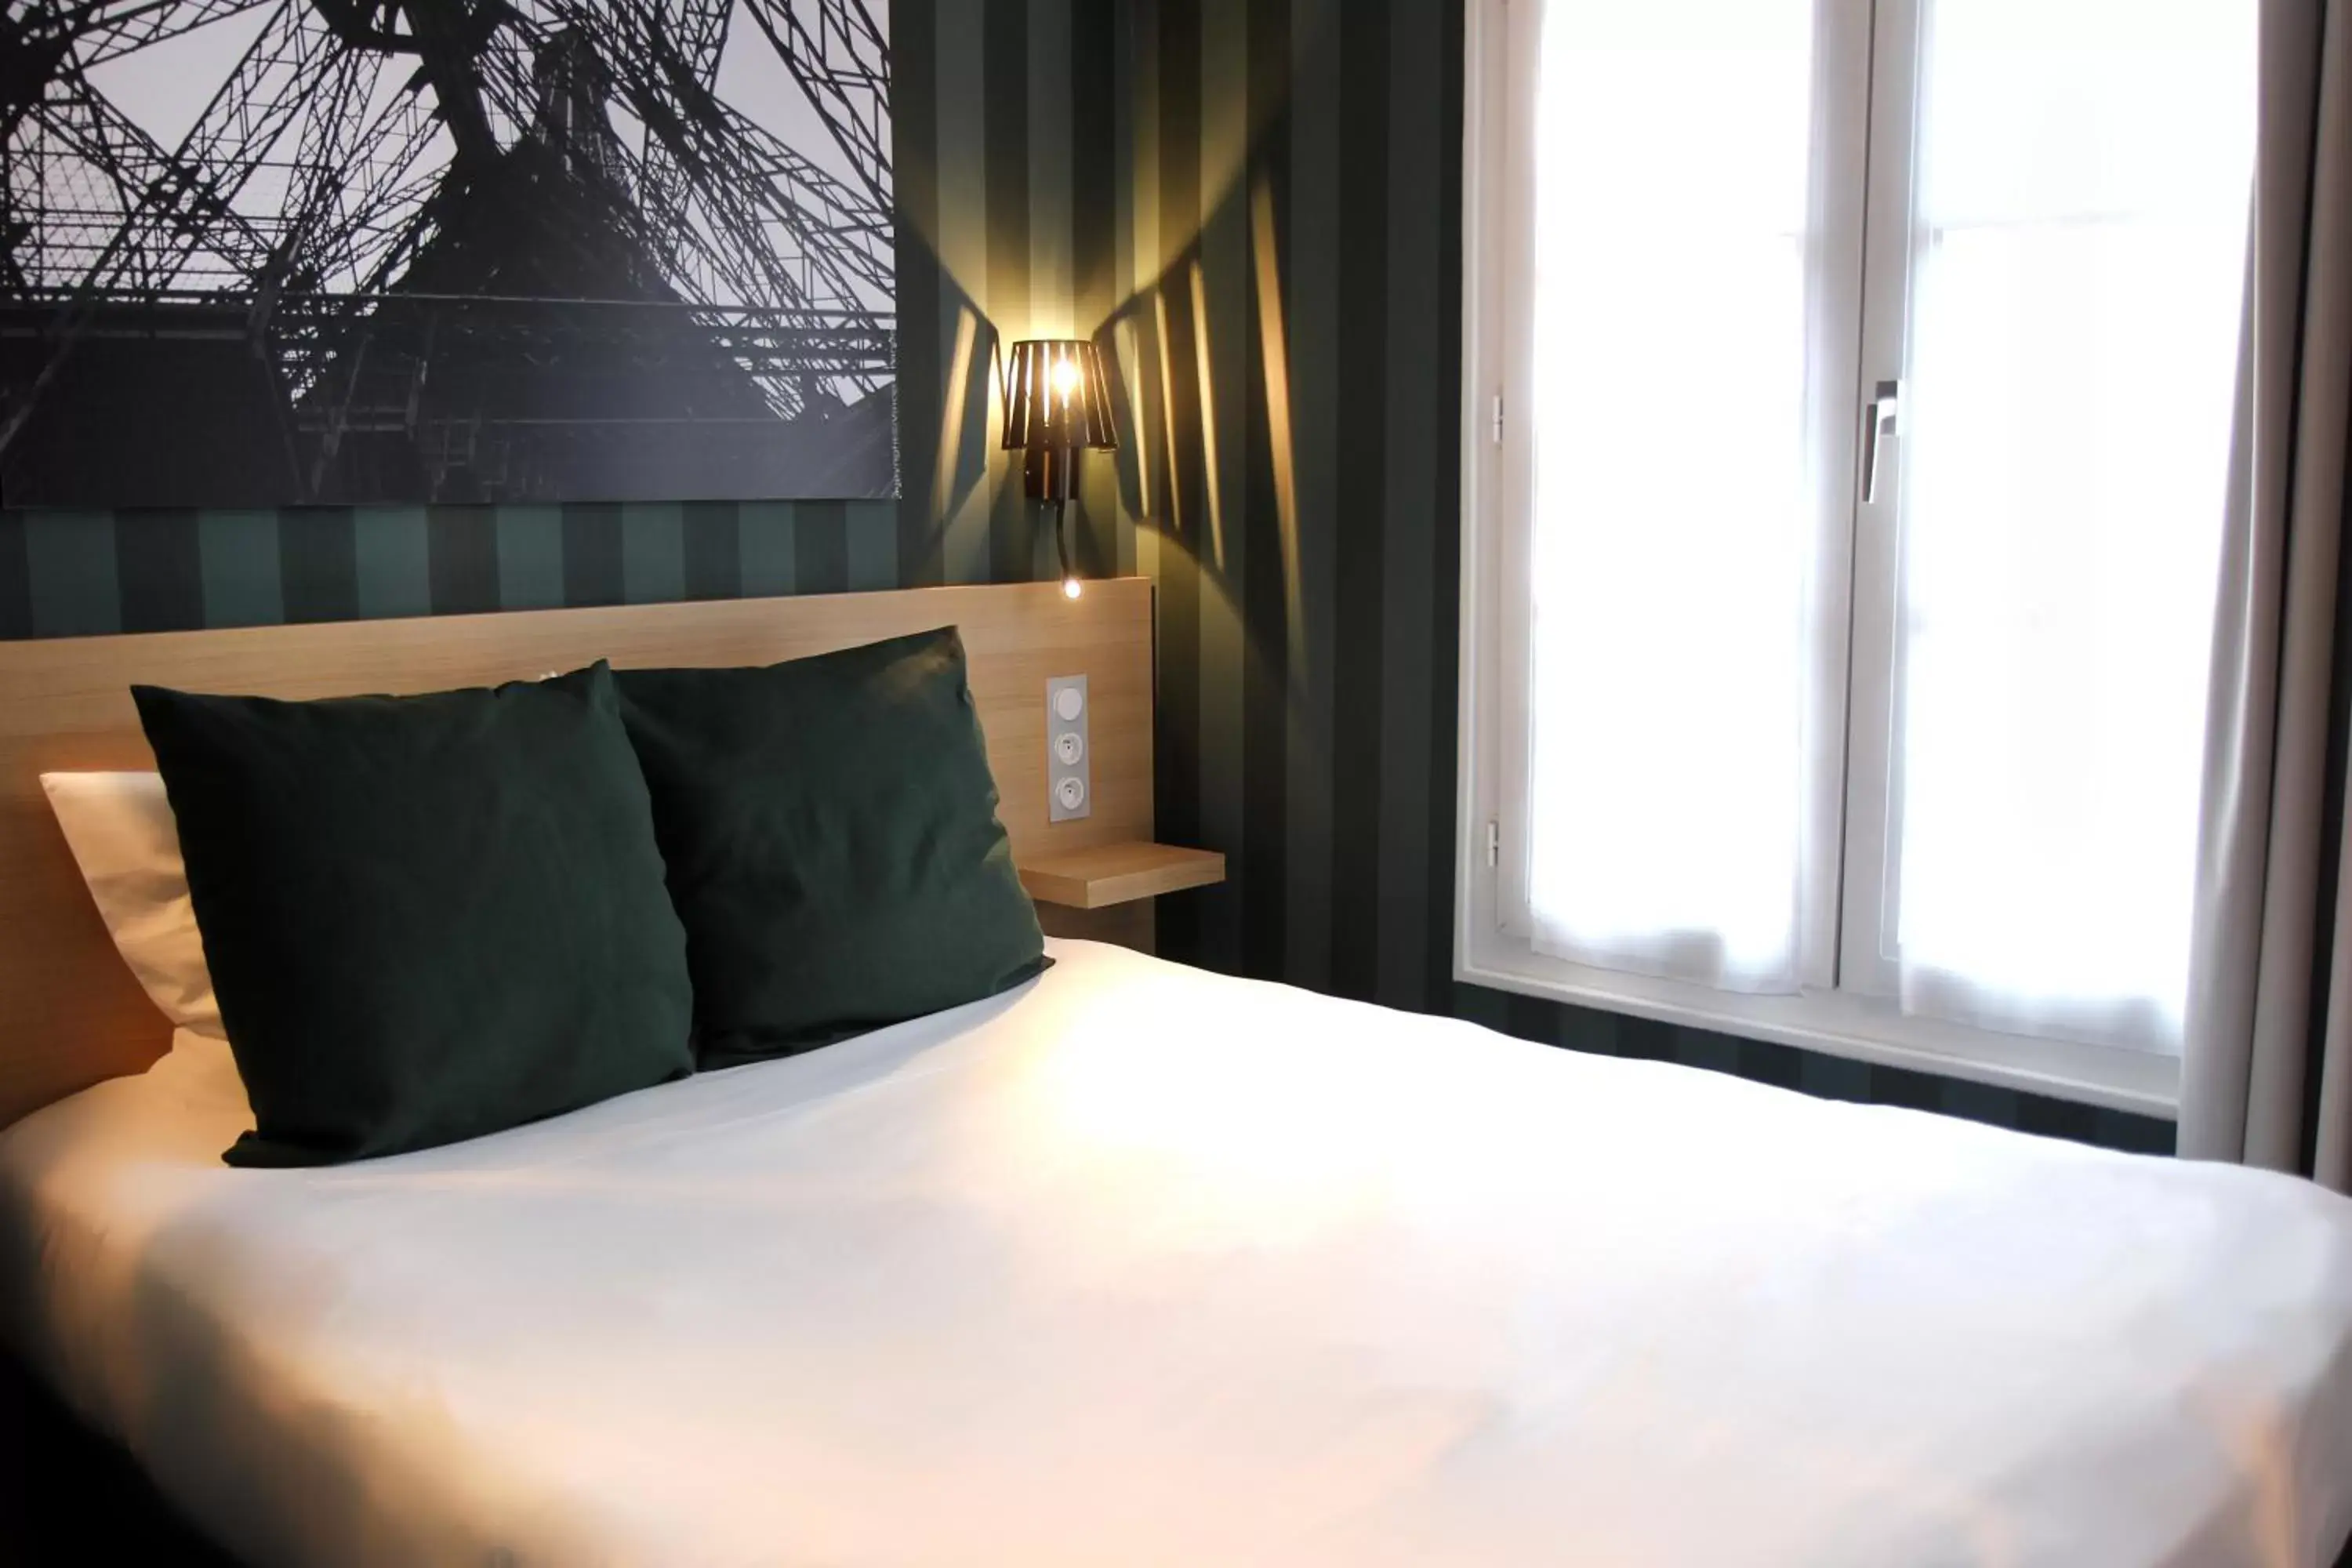 Bedroom, Bed in Best Western Hotel Opera Drouot